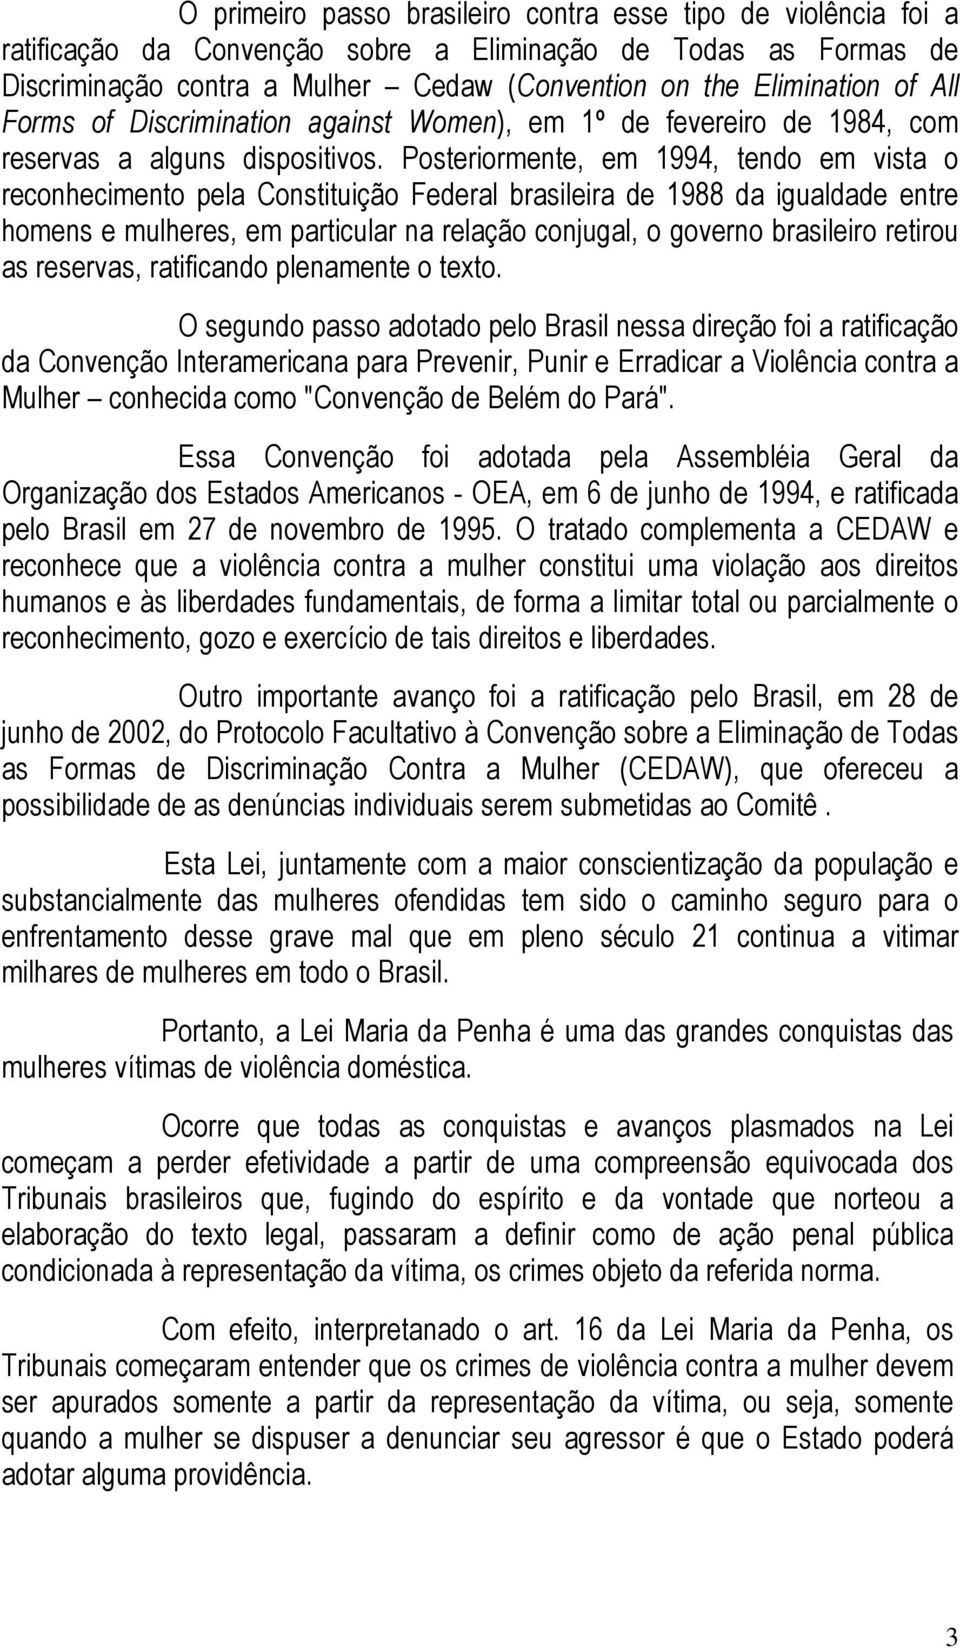 Posteriormente, em 1994, tendo em vista o reconhecimento pela Constituição Federal brasileira de 1988 da igualdade entre homens e mulheres, em particular na relação conjugal, o governo brasileiro